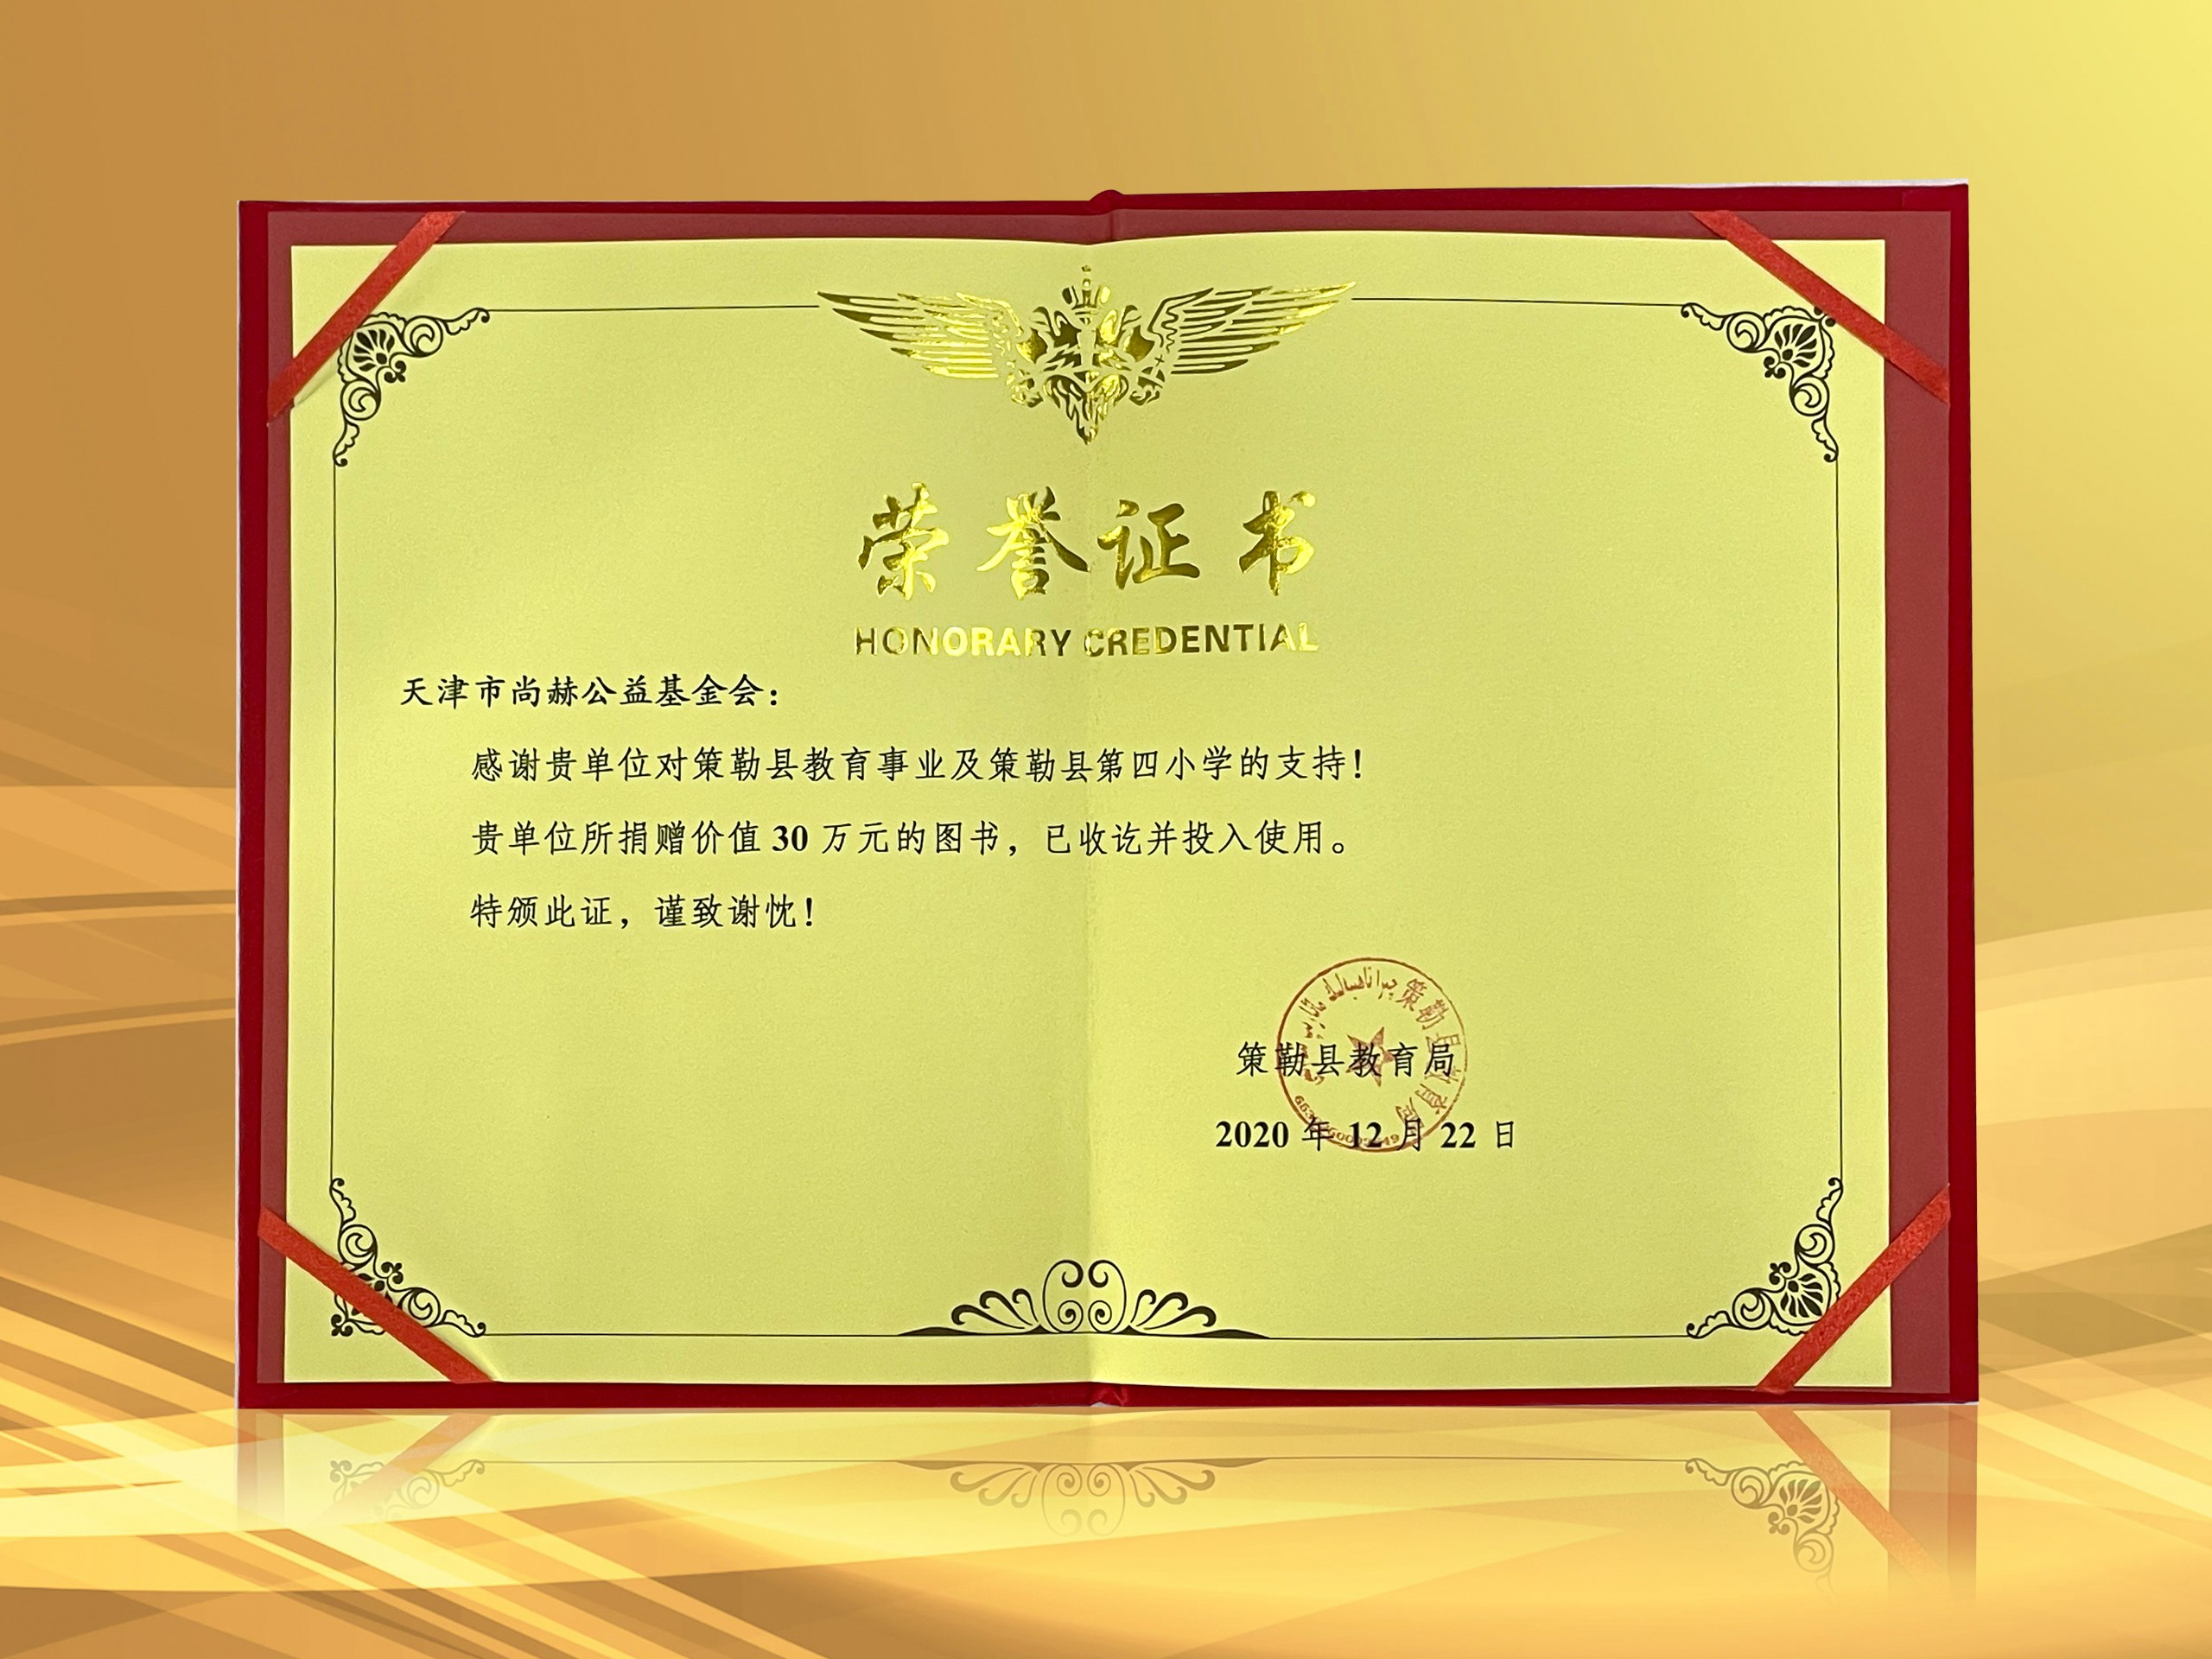 2021年3月-皇家体育(中国)有限责任公司公益基金会收到新疆策勒县教育局授予的荣誉证书